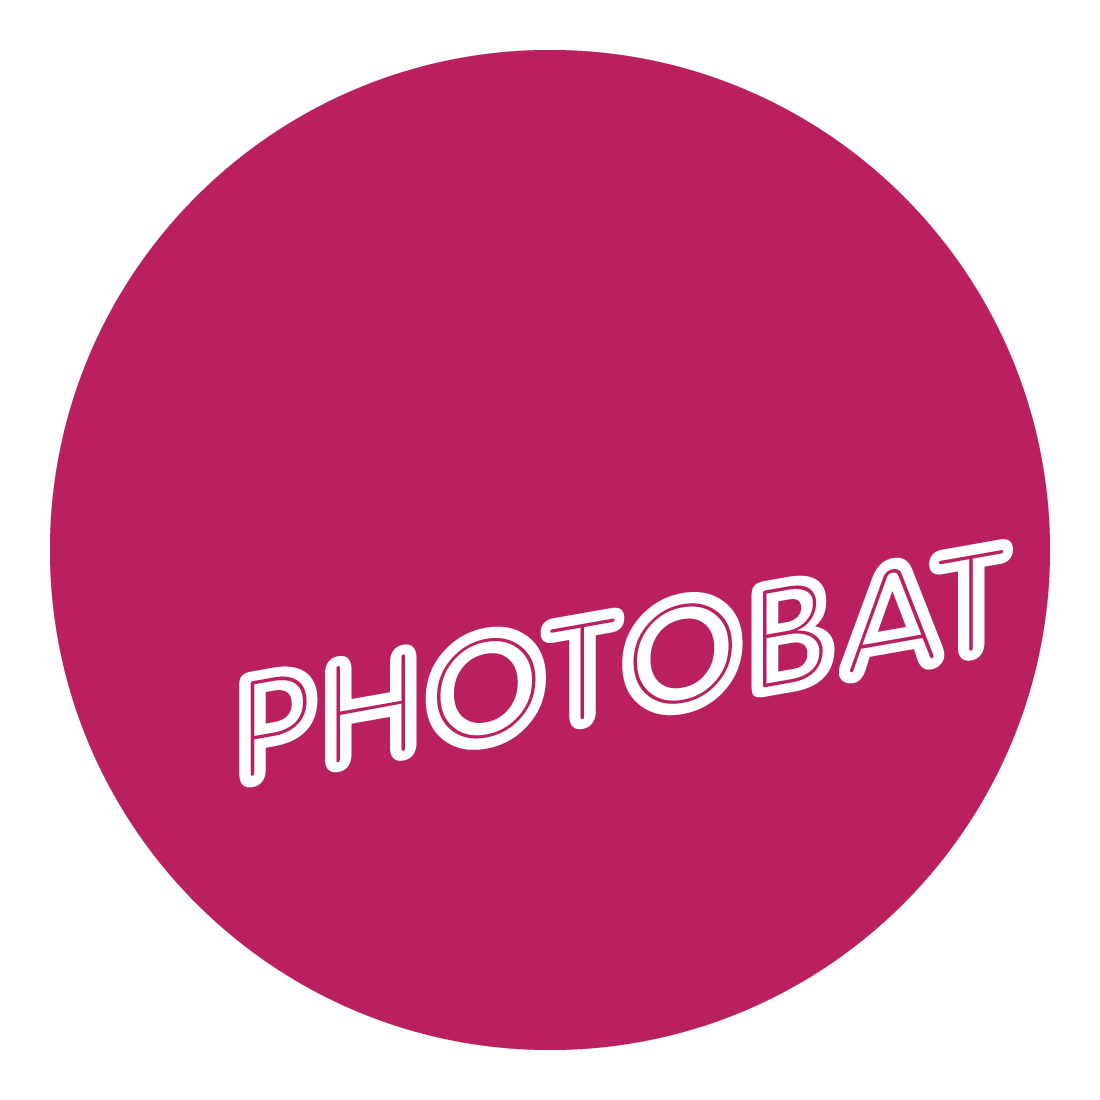 Photobat Photography